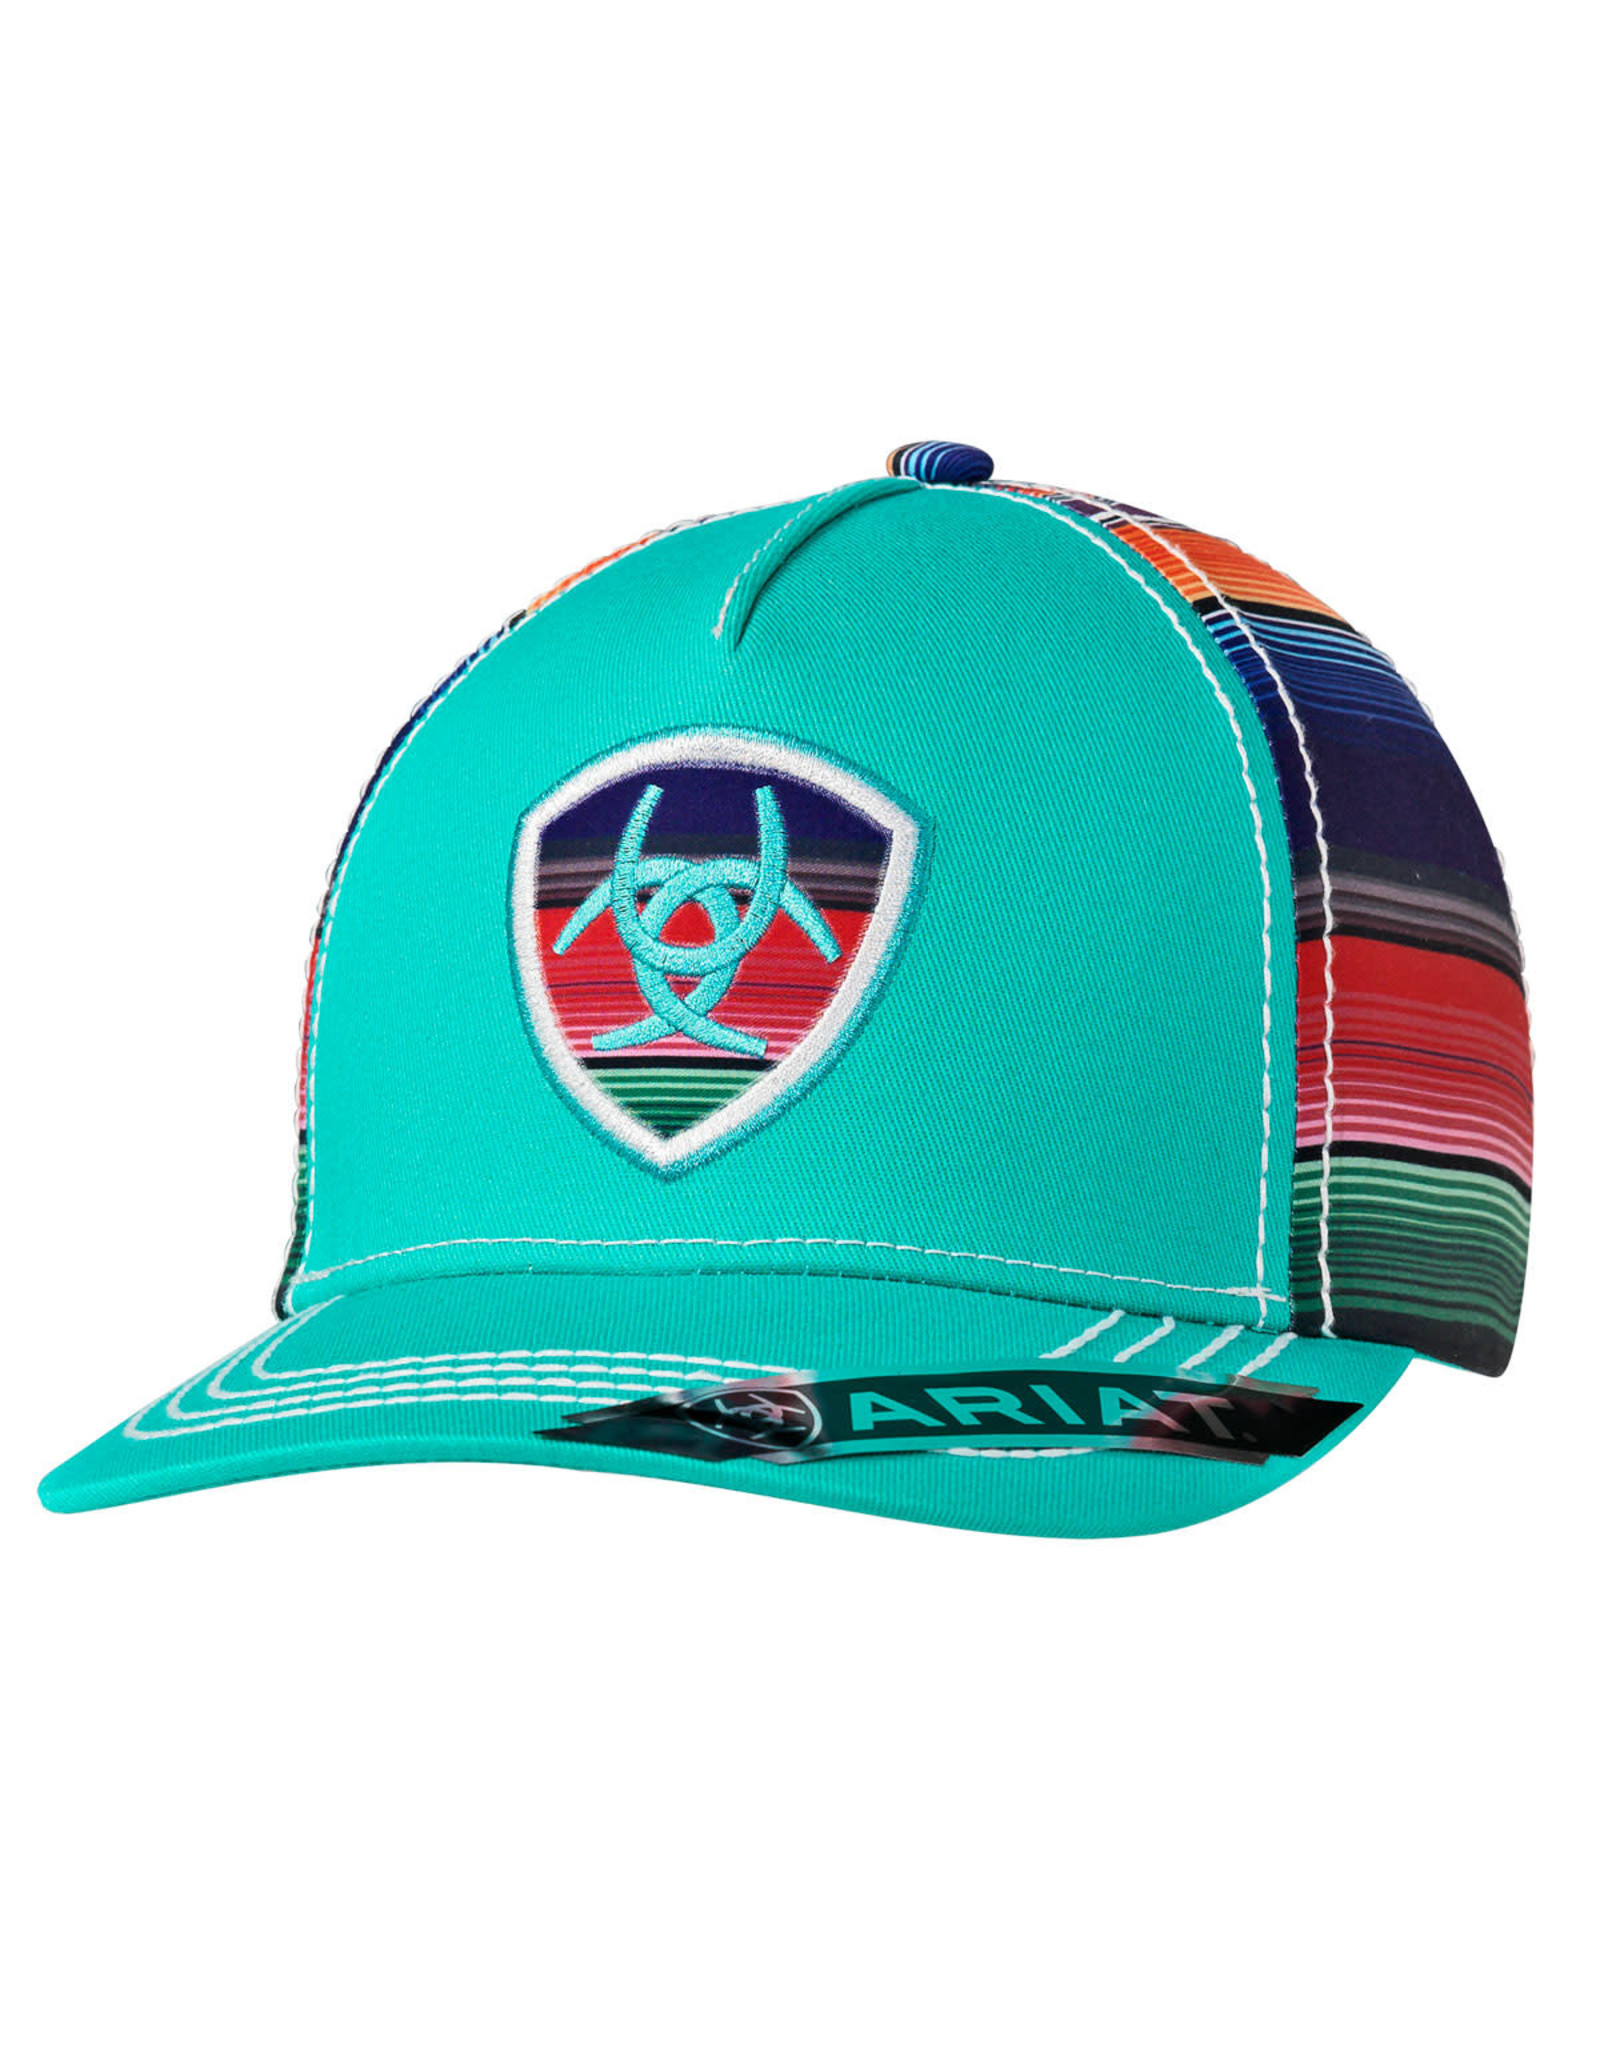 Ariat Ball Caps